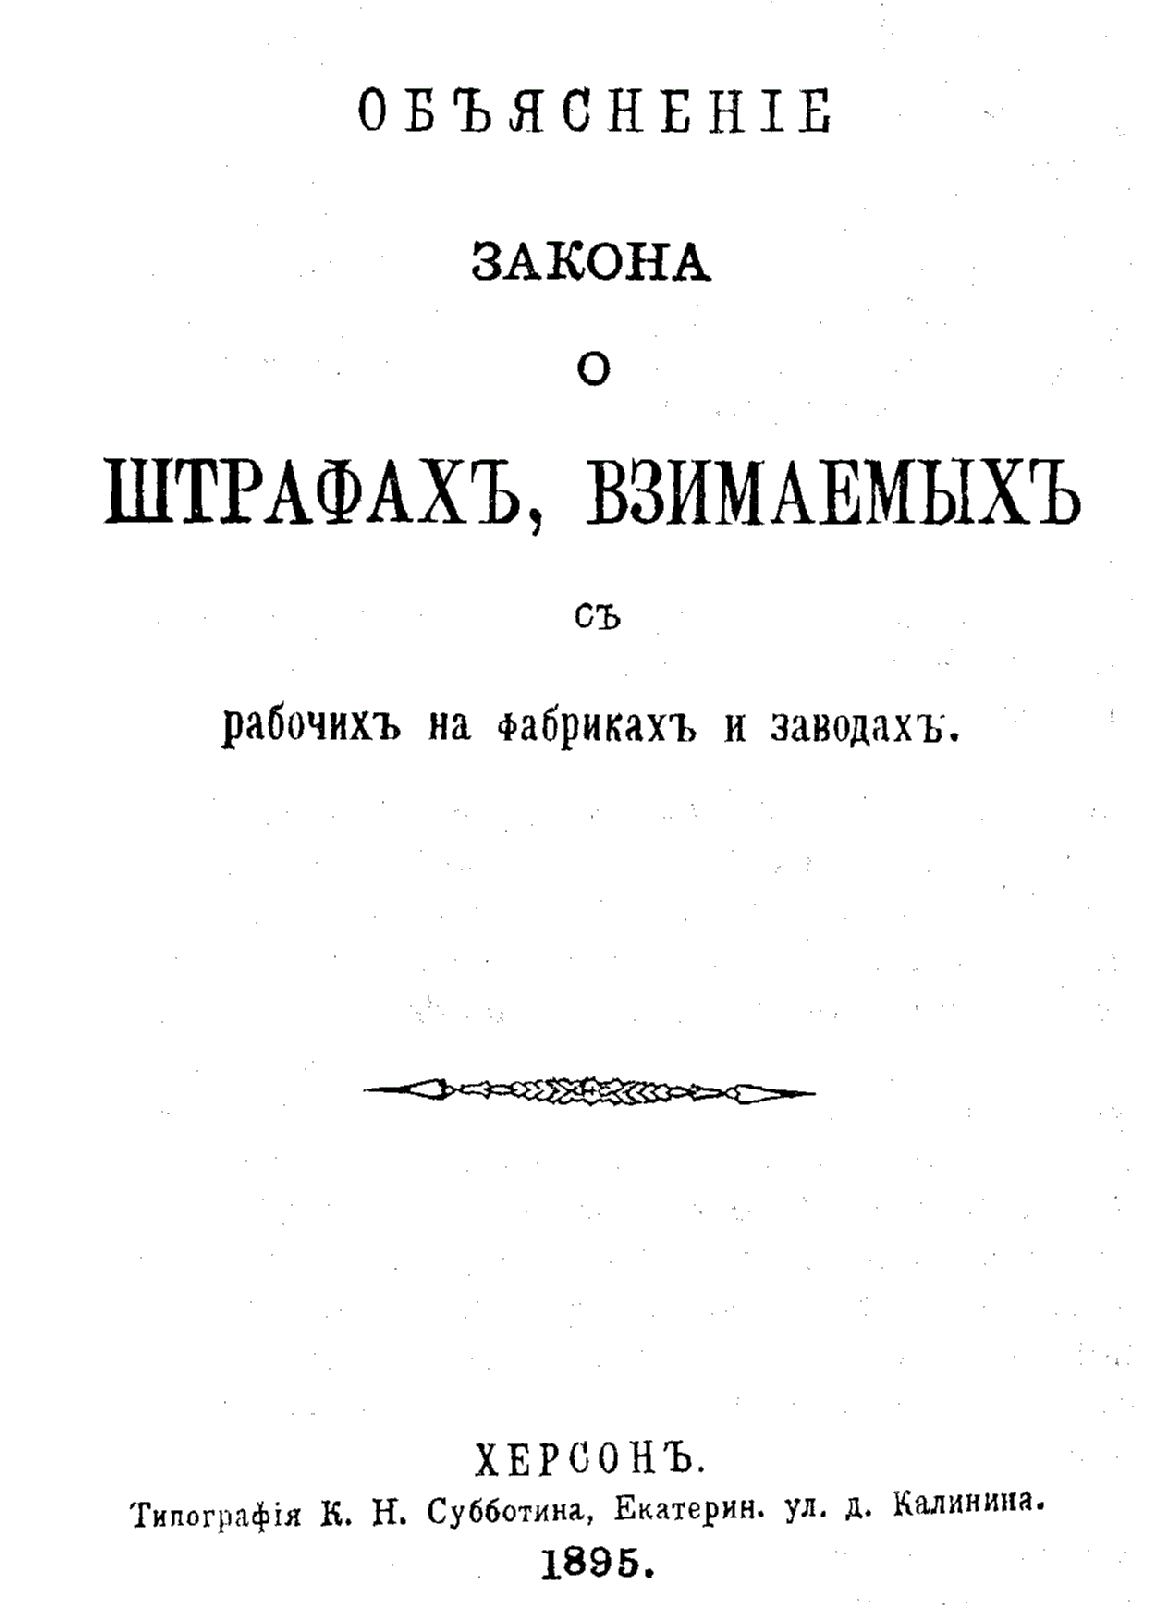 Tituln list broury z roku 1895